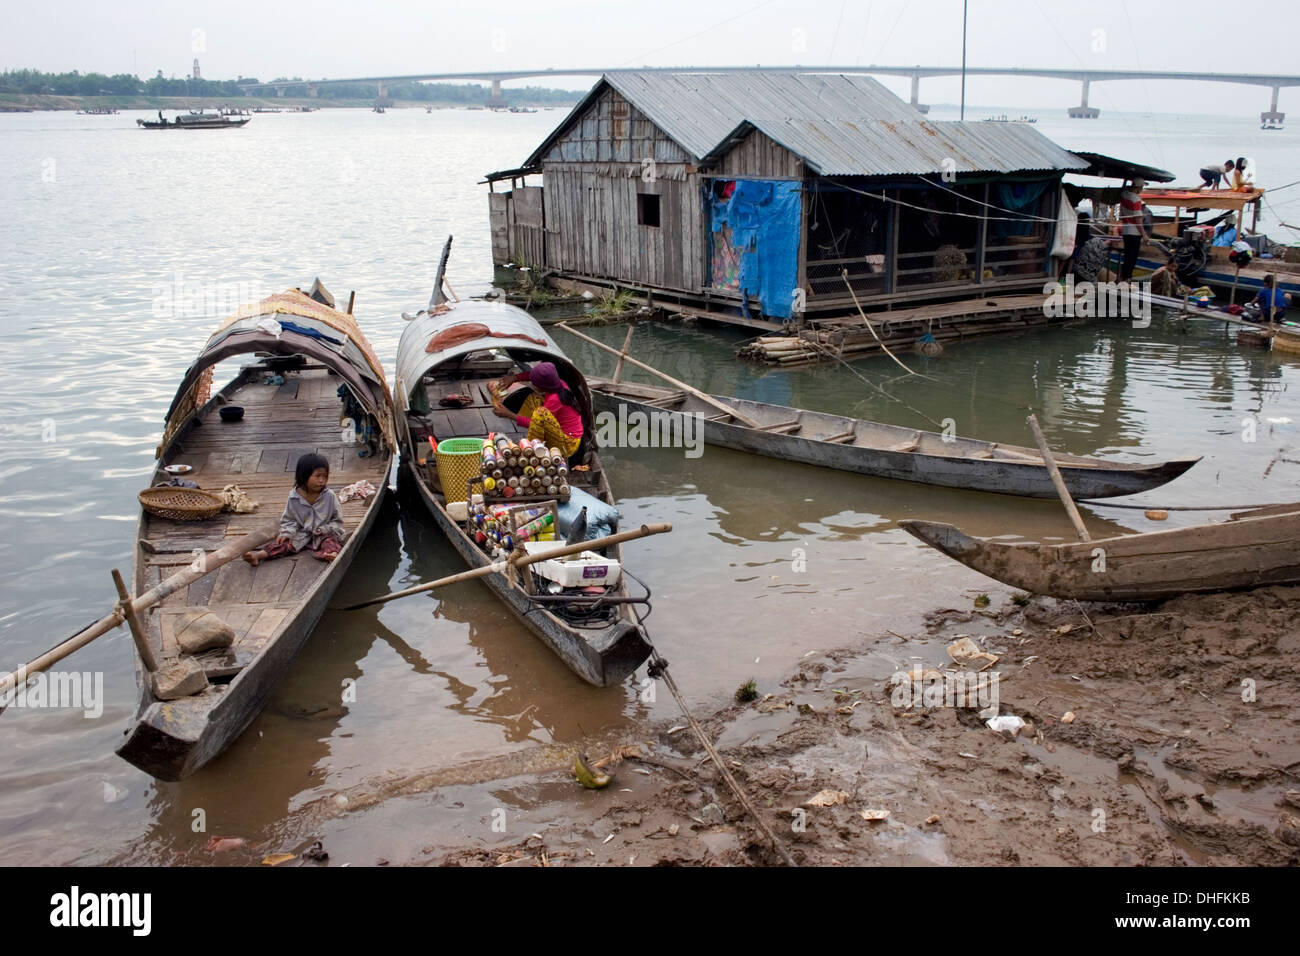 Bateaux de pêche en bois sont amarrés près d'une maison flottante au bord du Mékong dans la région de Kampong Cham, au Cambodge. Banque D'Images